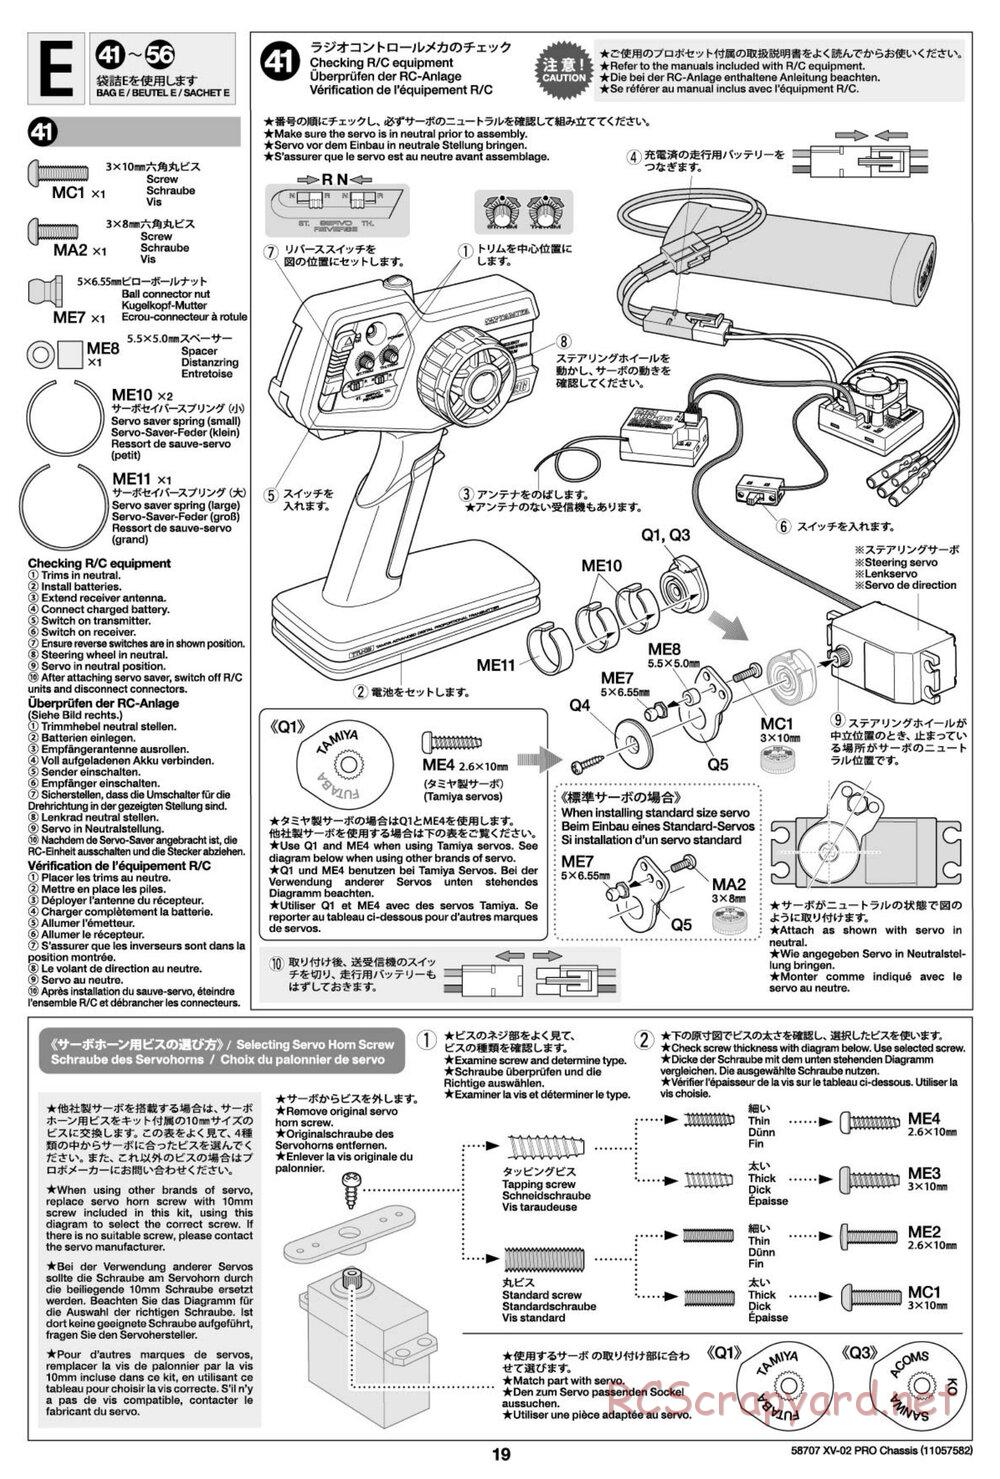 Tamiya - XV-02 Pro Chassis - Manual - Page 19